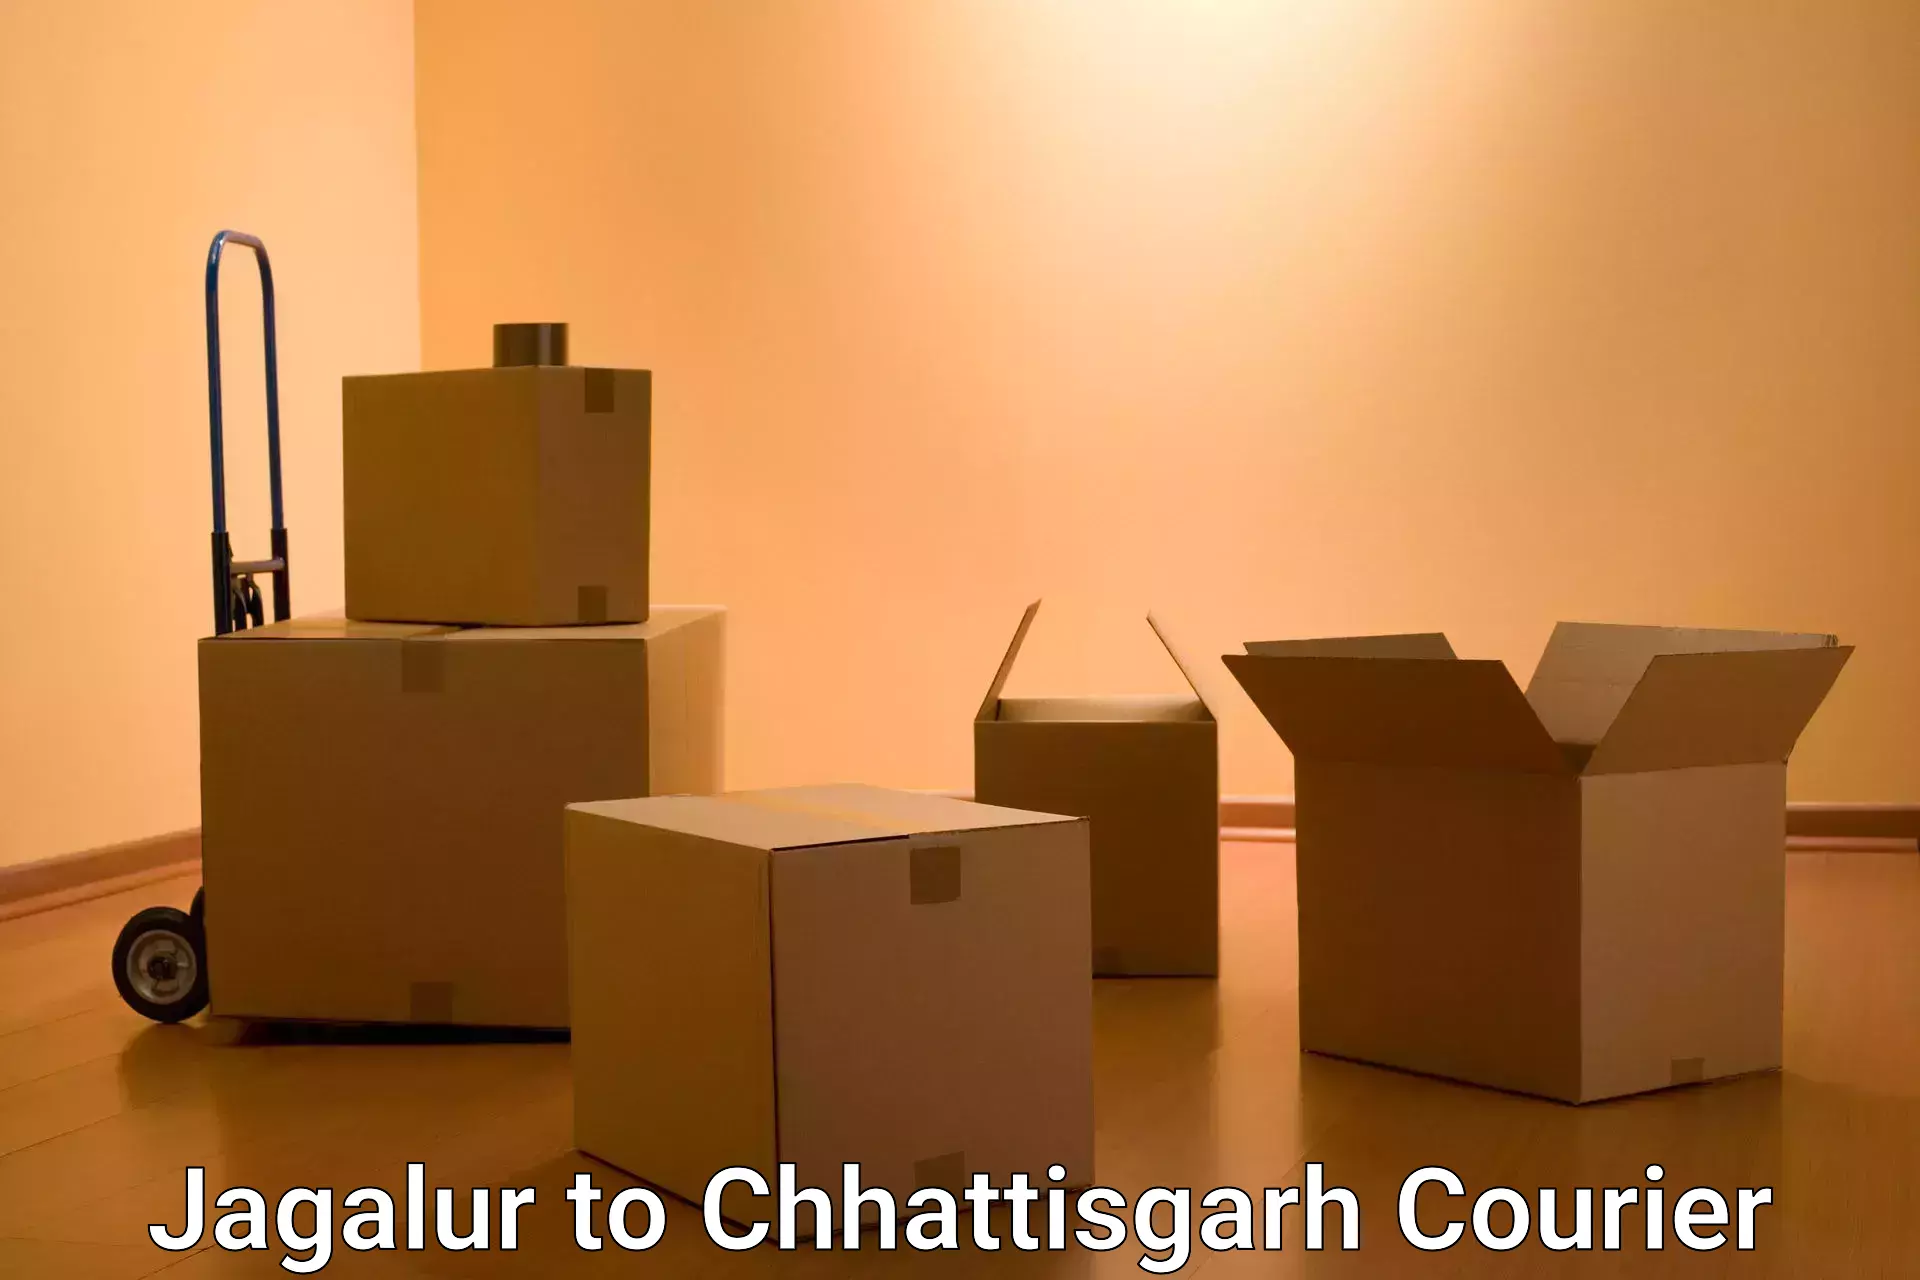 High-speed delivery Jagalur to Bijapur Chhattisgarh